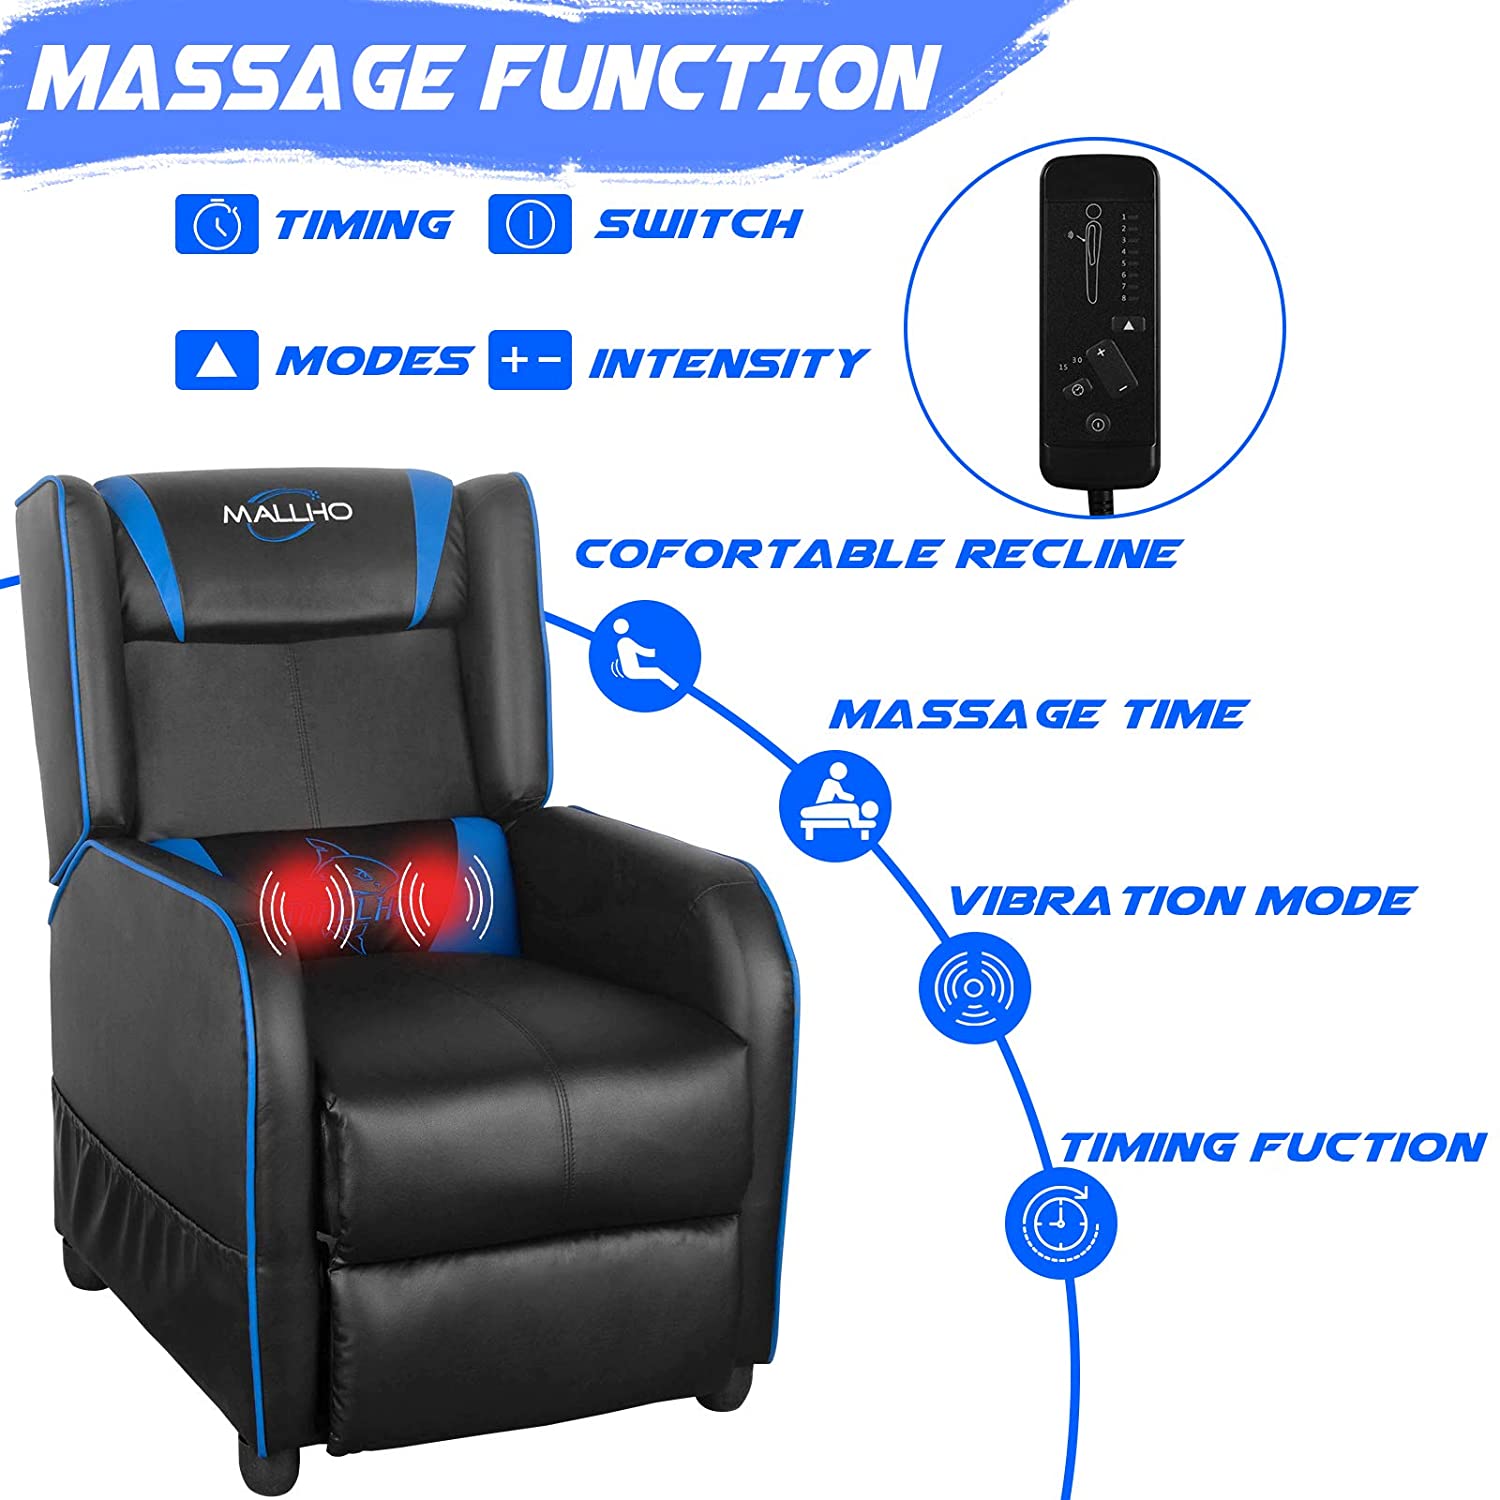 massagechairfor-avacen.jpg